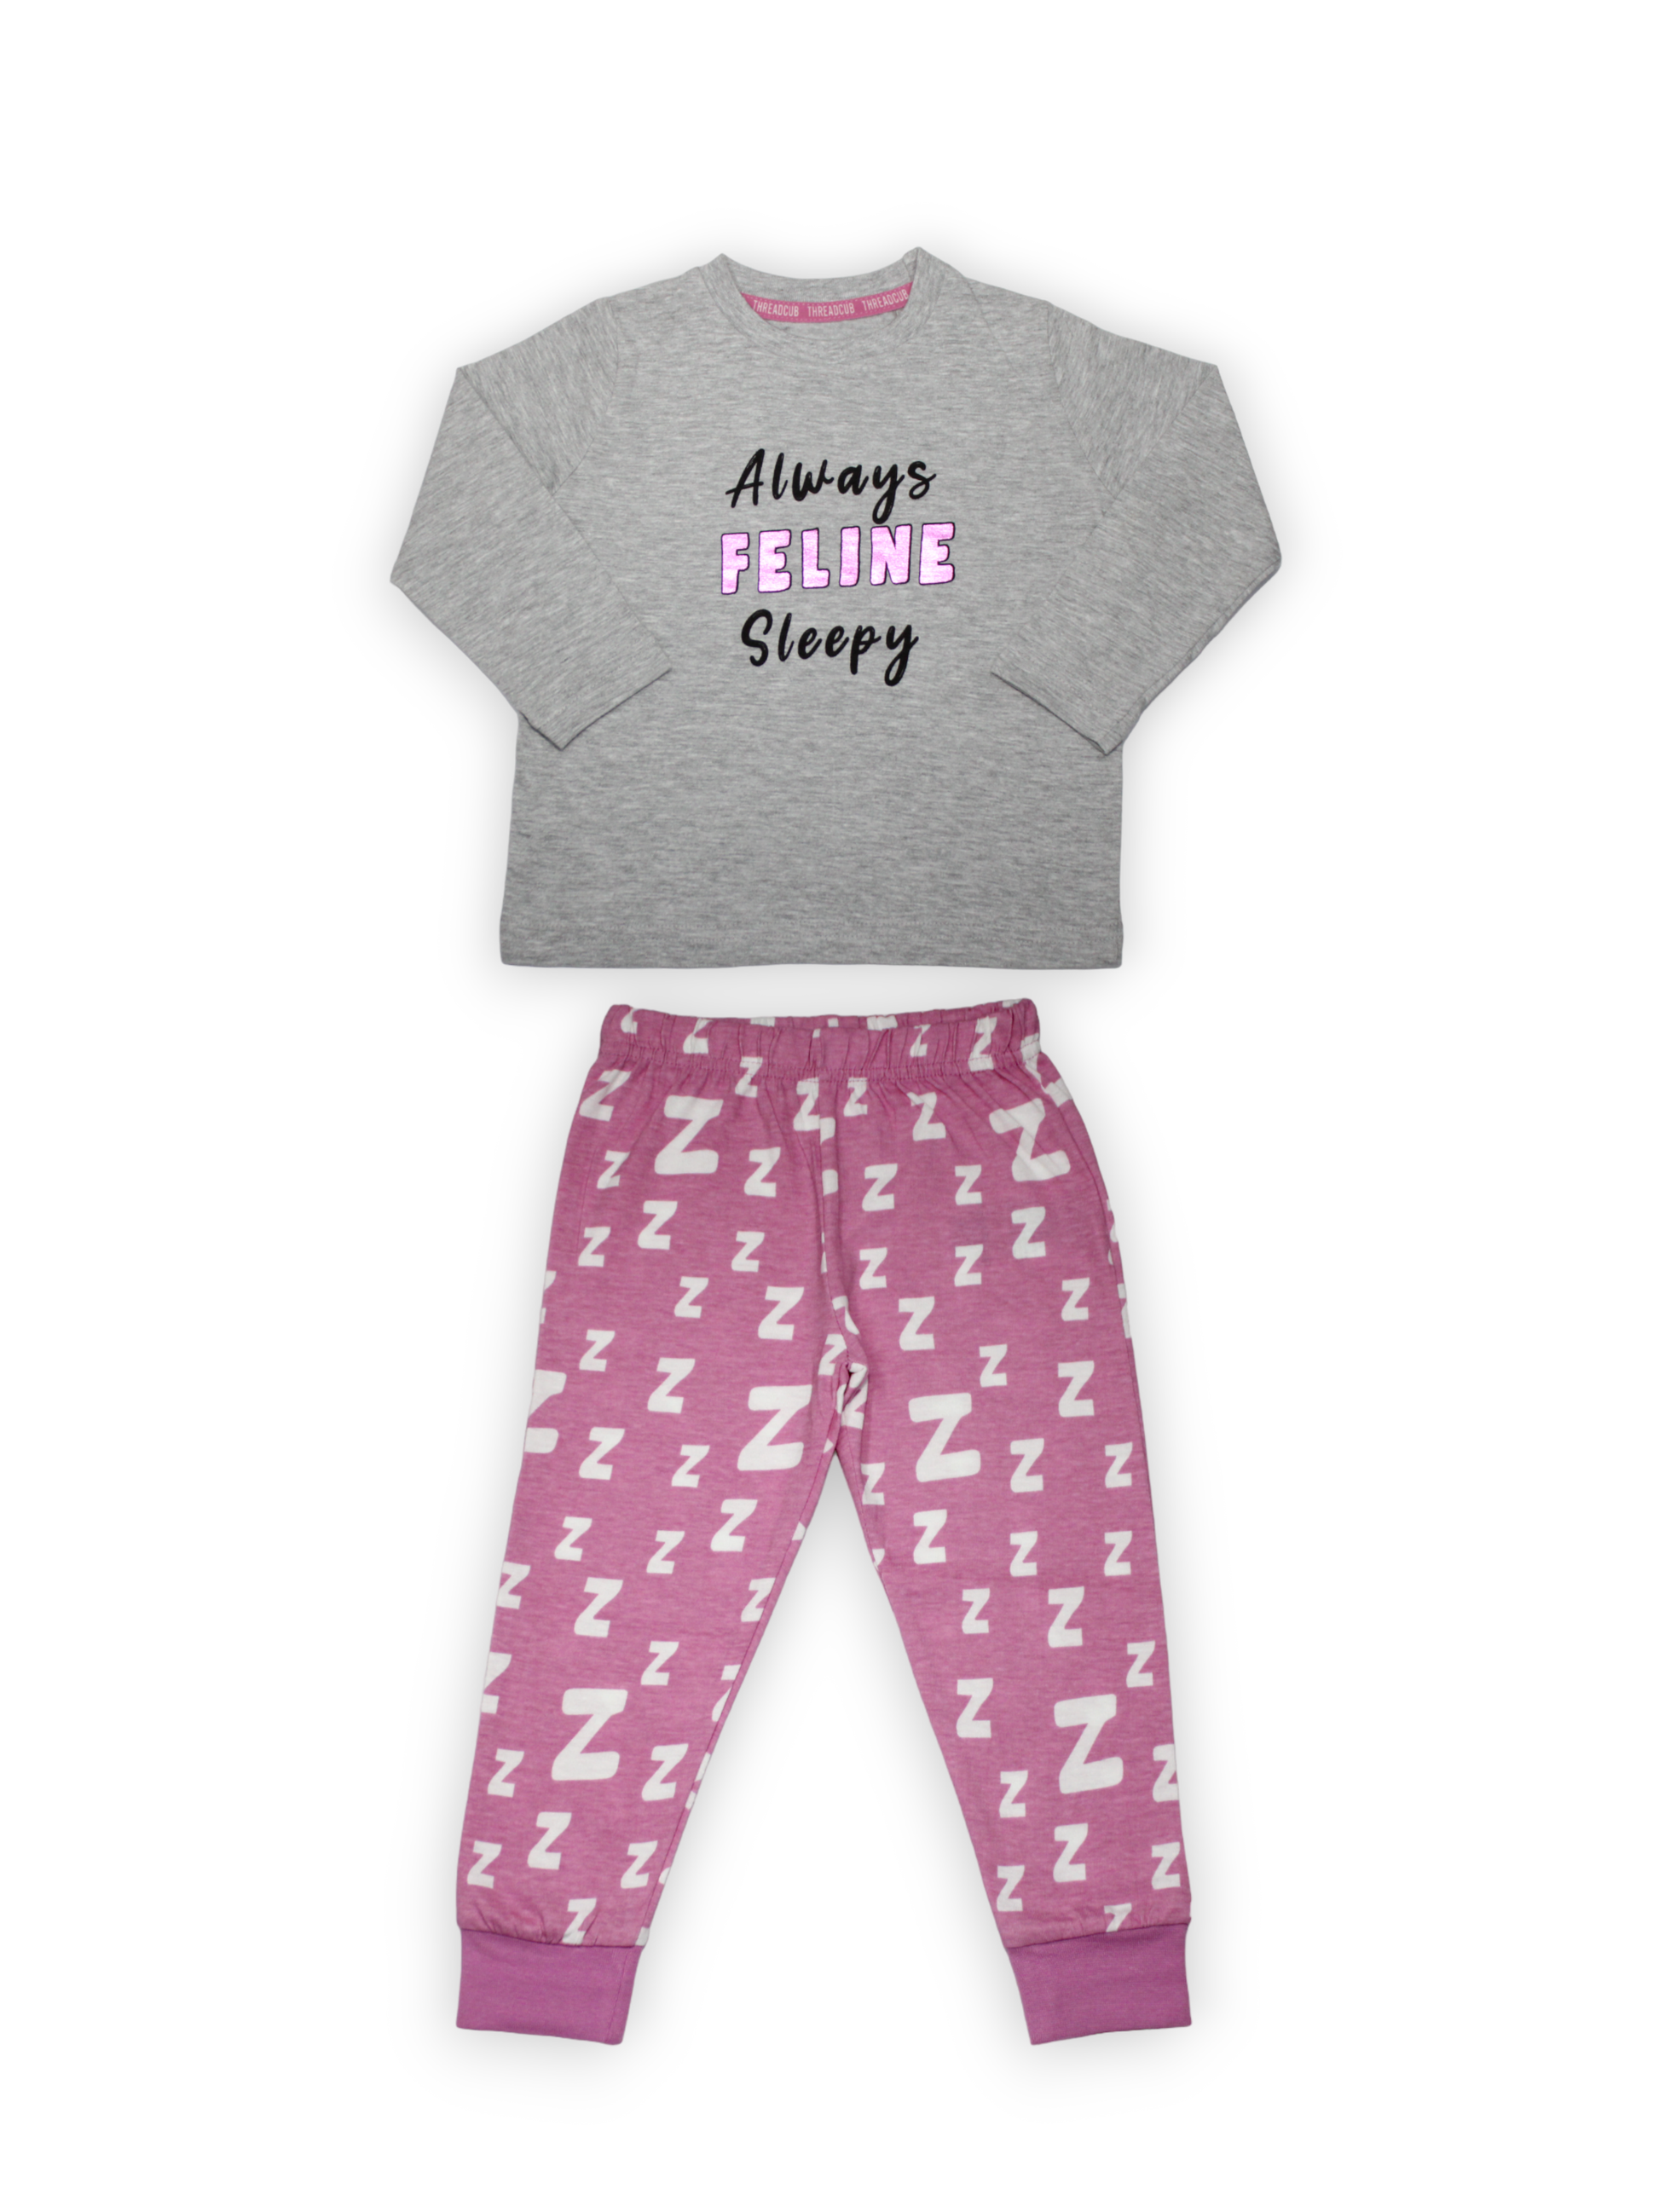 Feeline Sleepy Pyjama T-Shirt Set ( Pack of 1 )